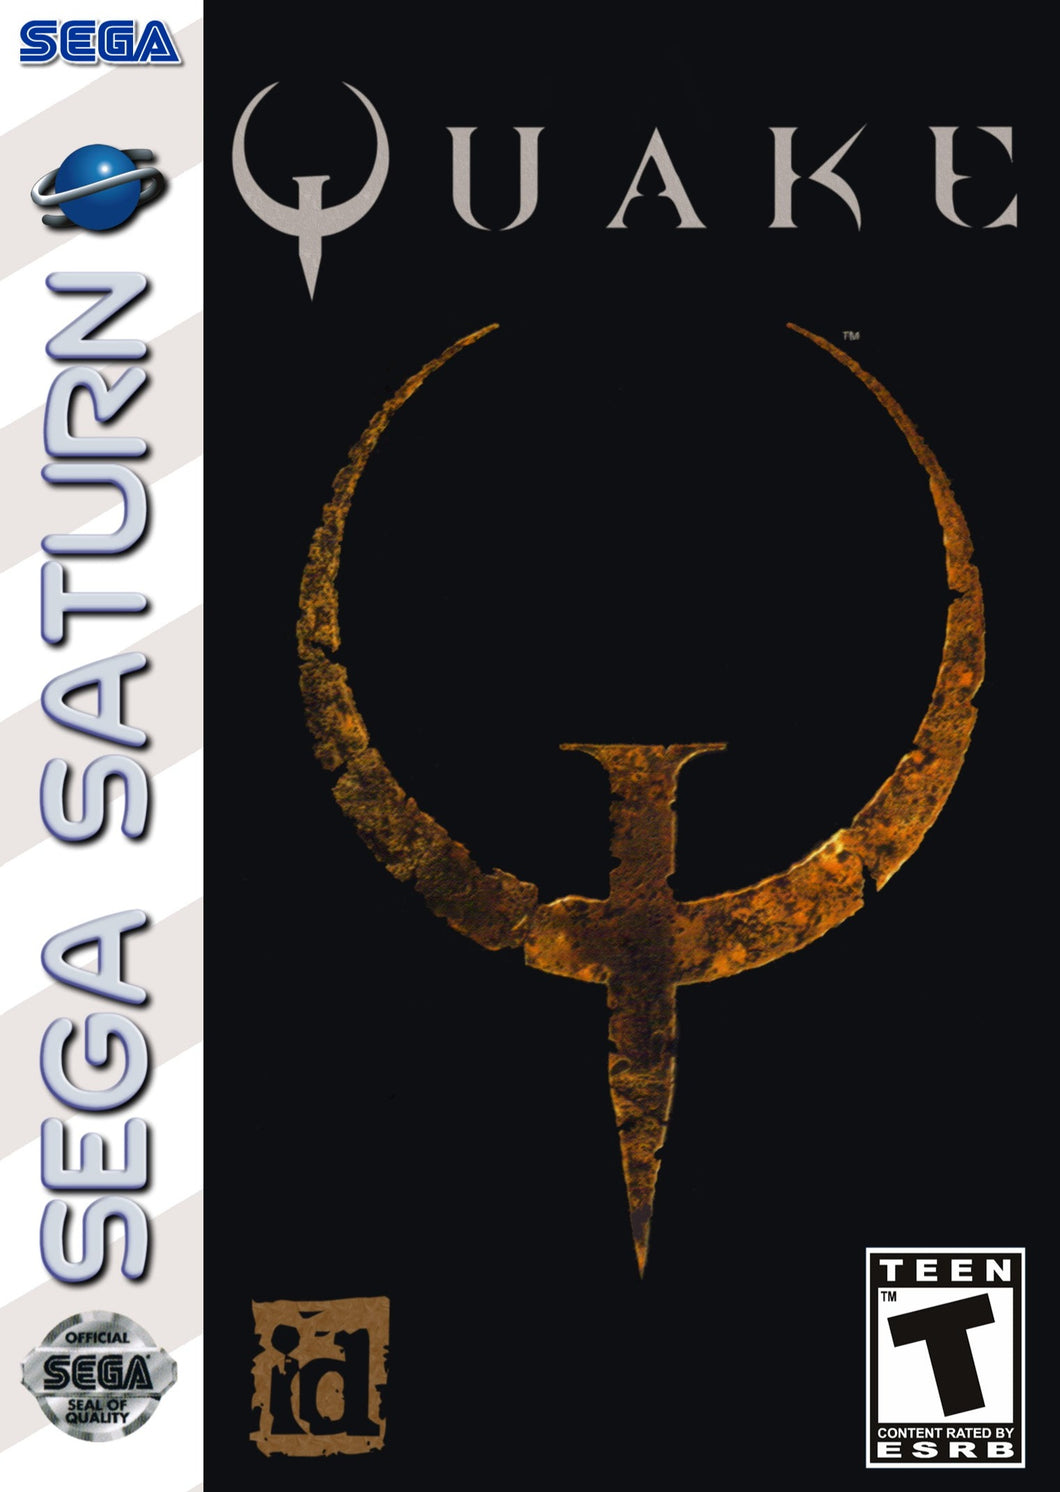 Quake Sega Saturn